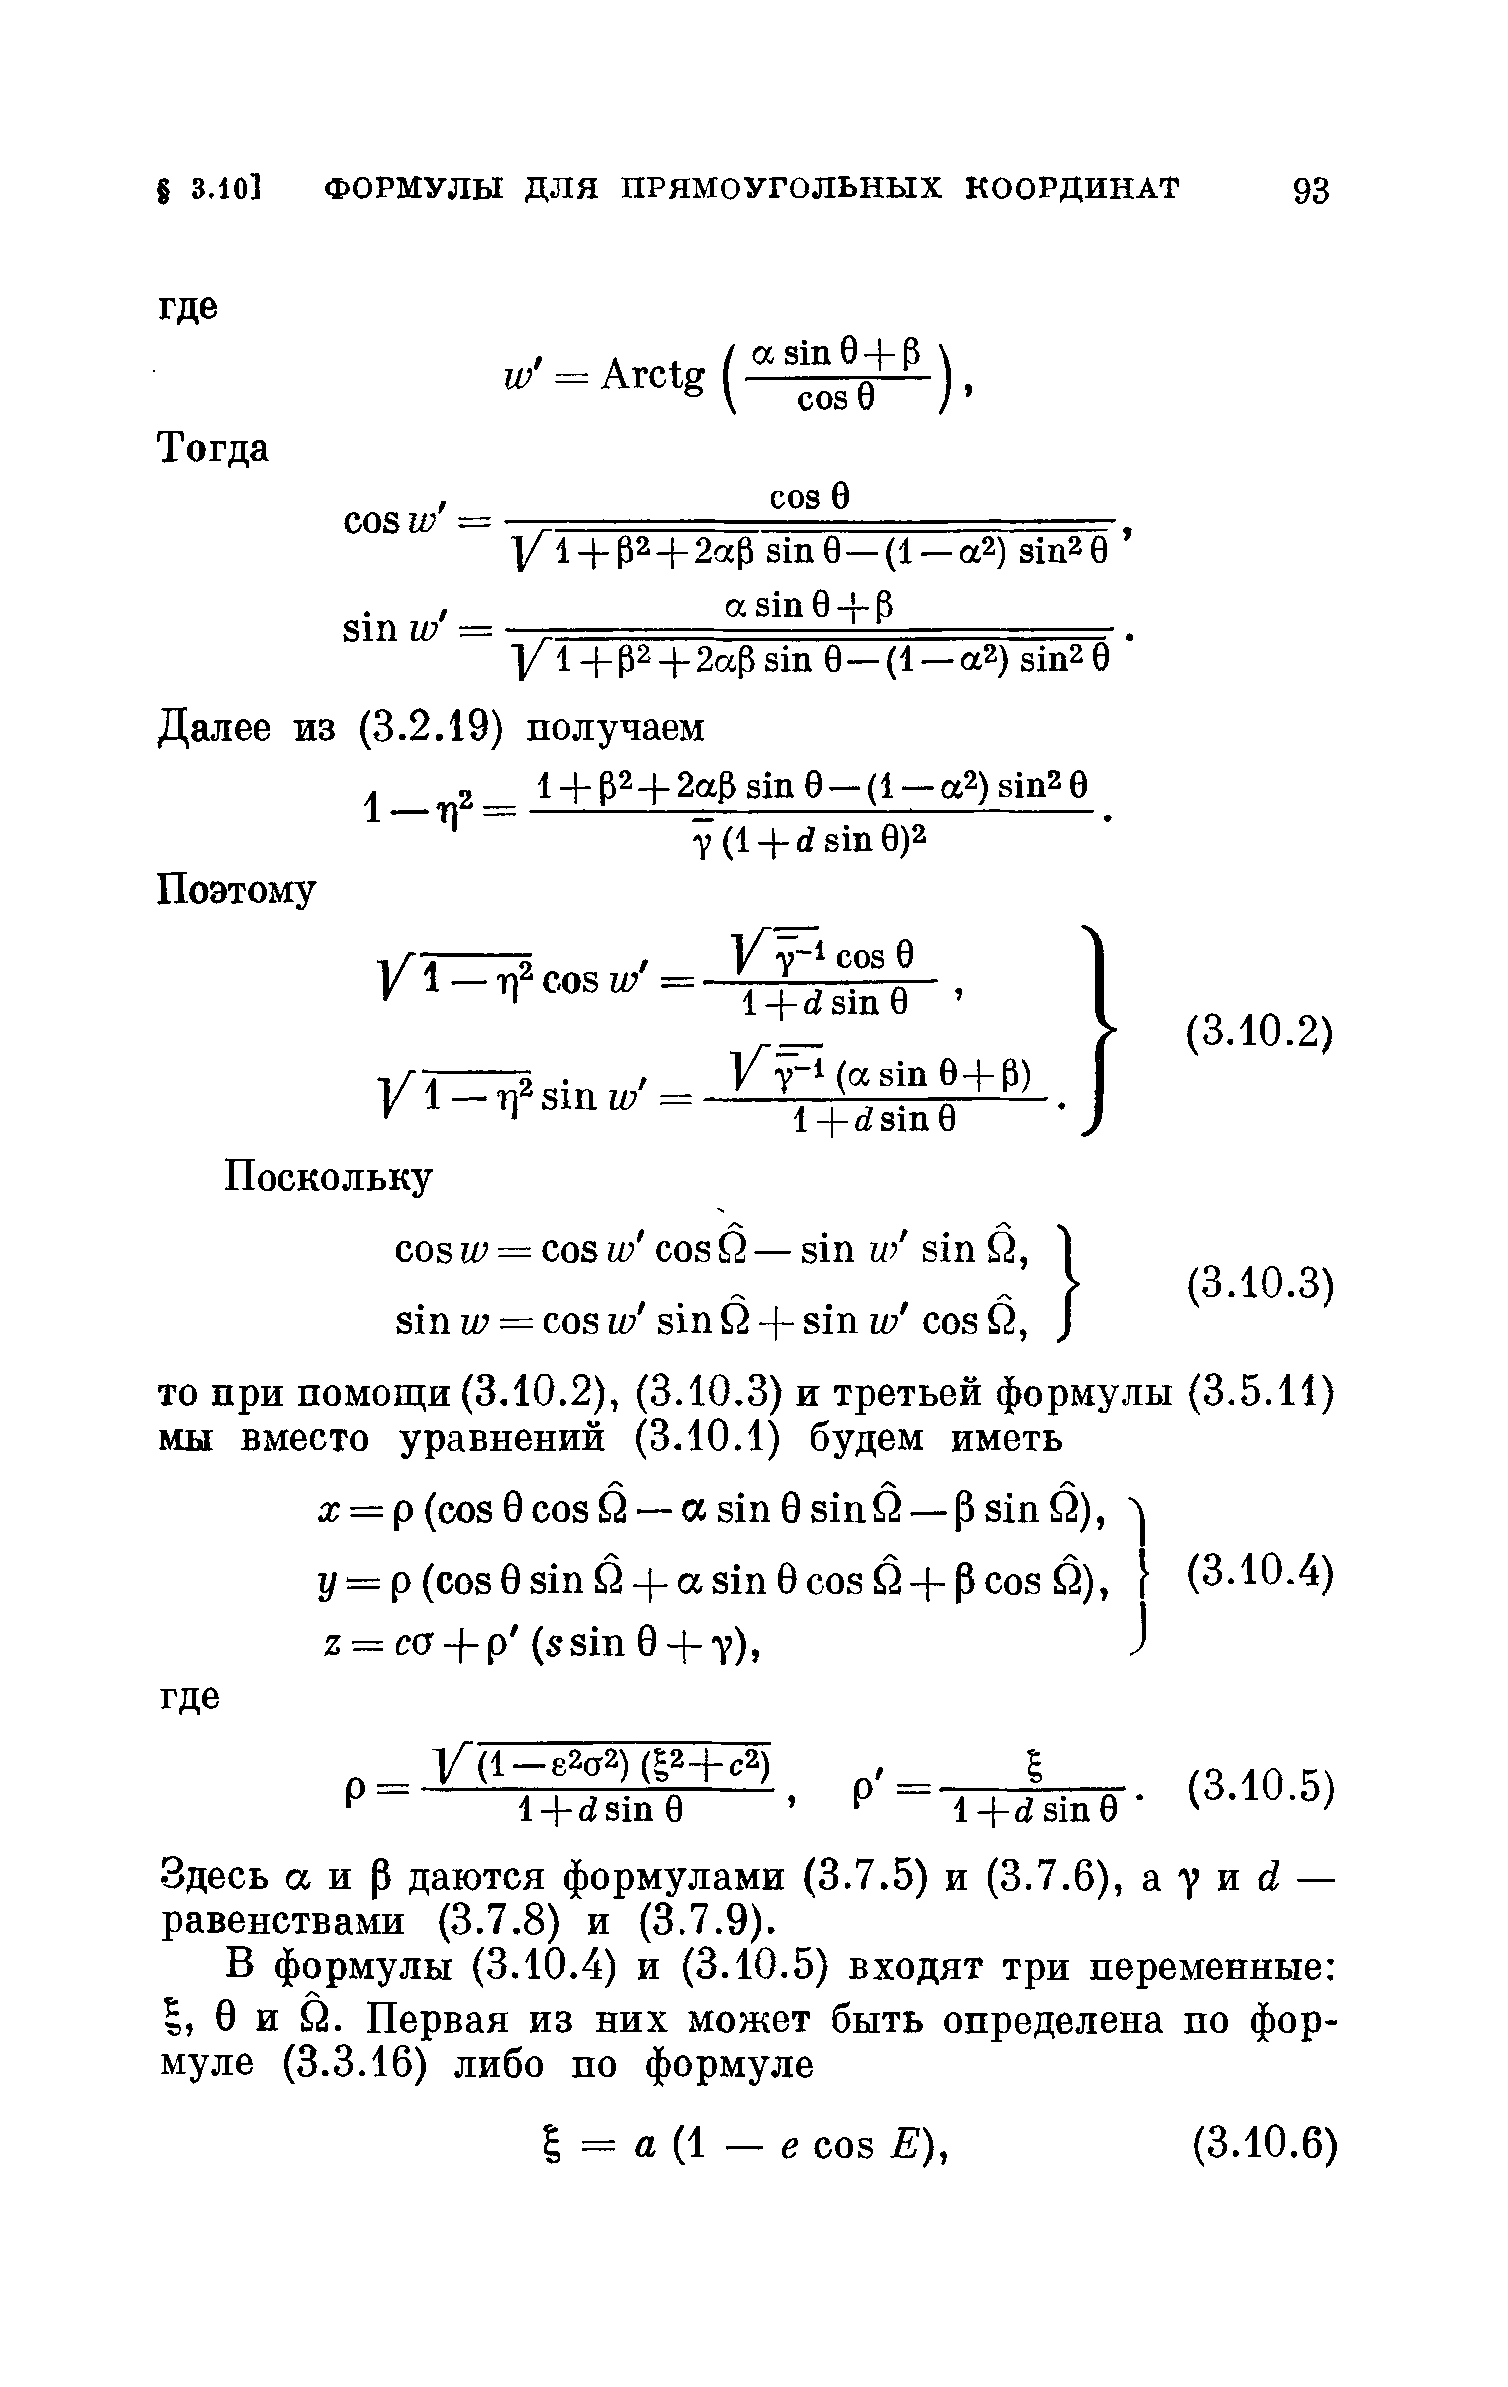 Здесь аир даются формулами (3.7.5) и (3.7.6), а 7 и й — равенствами (3.7.8) и (3.7.9).
